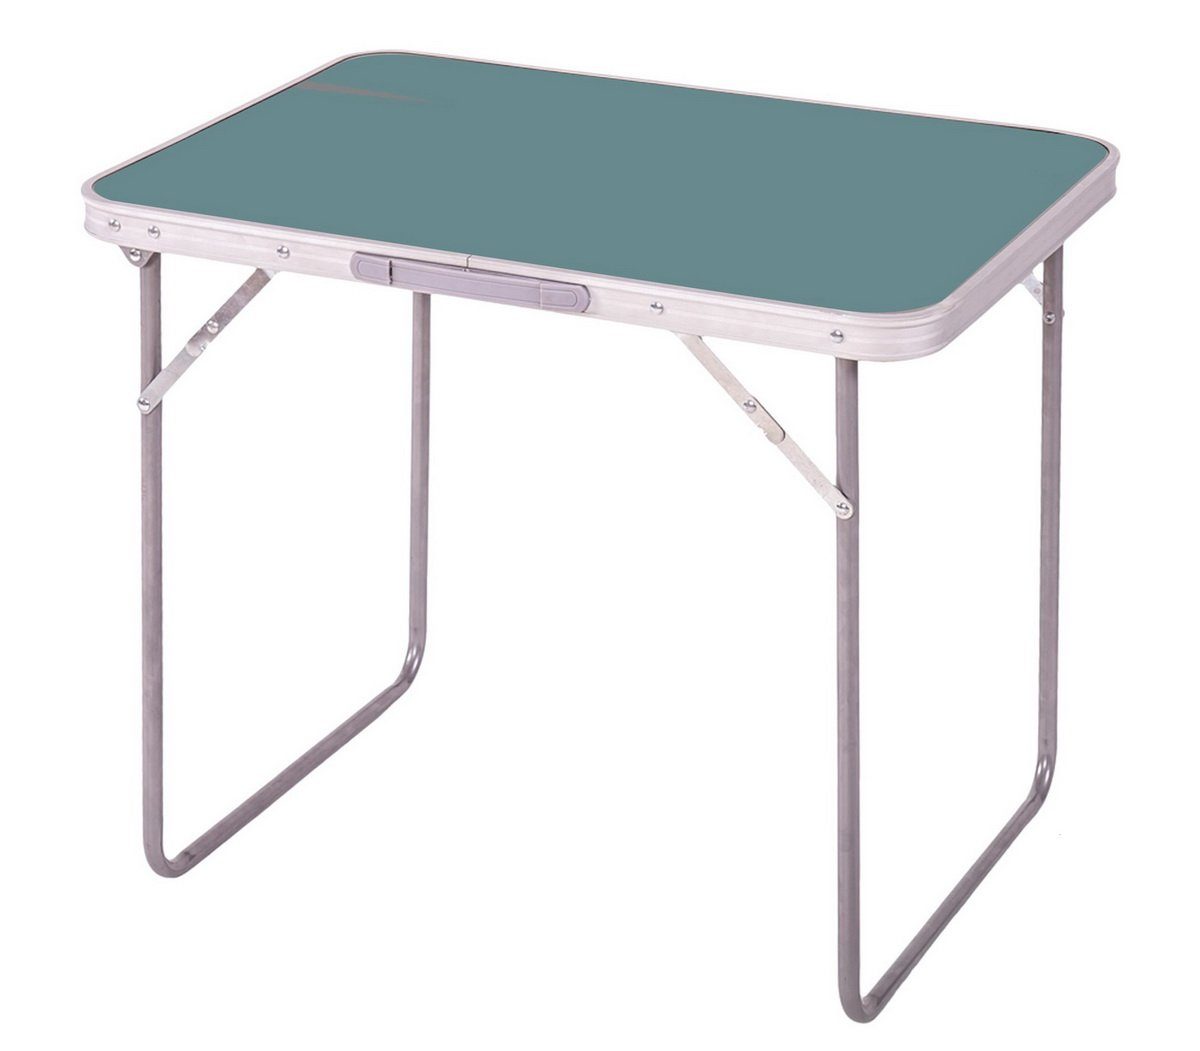 Sunnydays Campingtisch klappbarer Camping-Tisch Picknicktisch Partytisch blau-grün | Tische